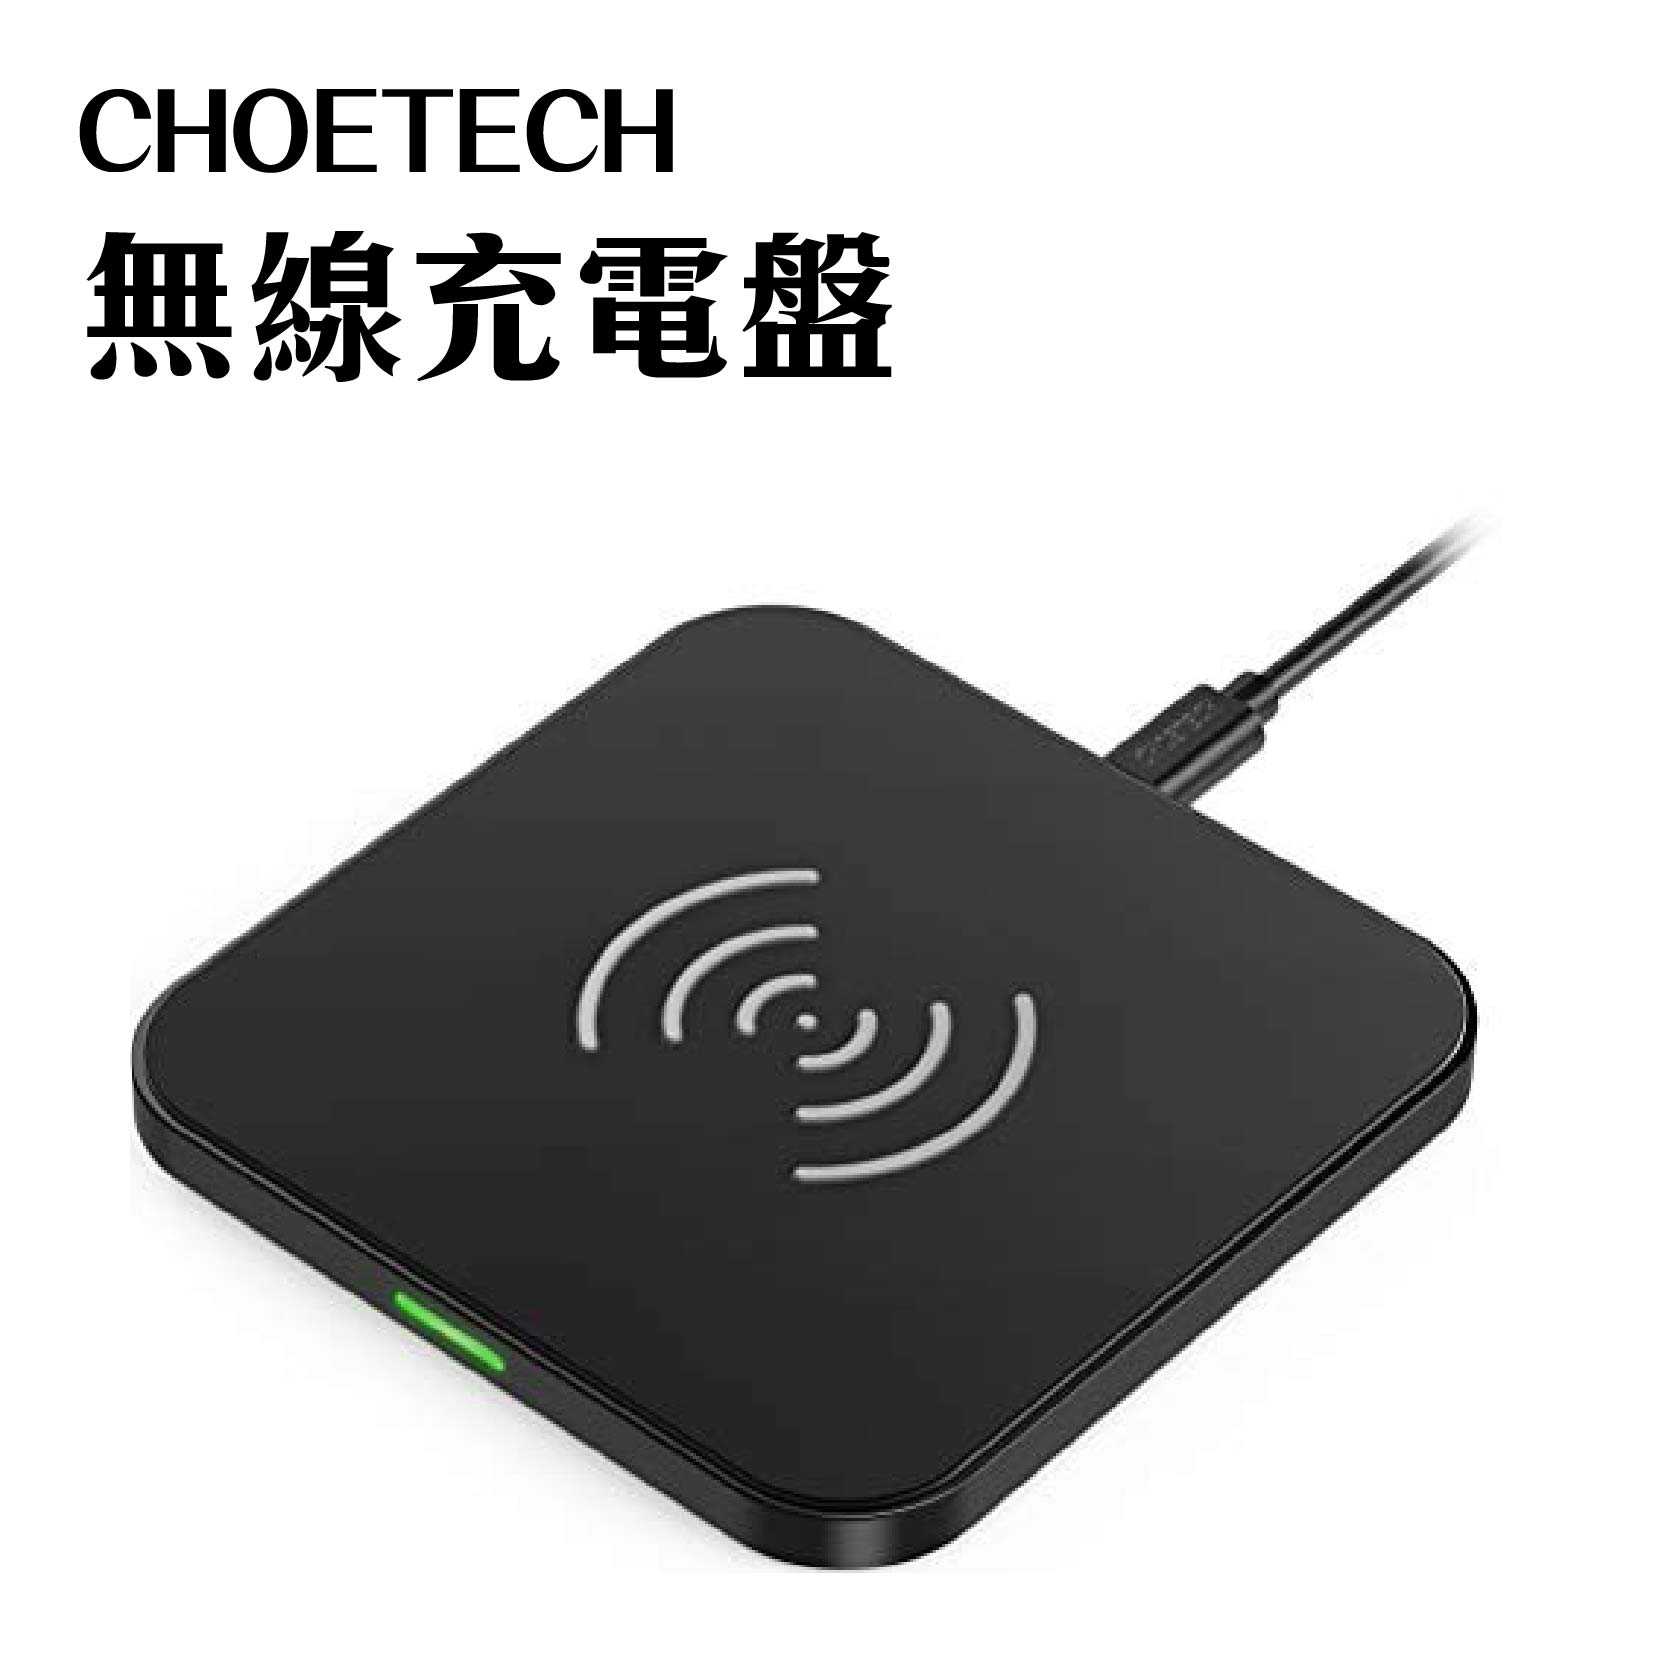 現貨『CHOETECH Qi超薄型質感無線充電盤』充電盤 10W/7.5W 急速充電 T511-S